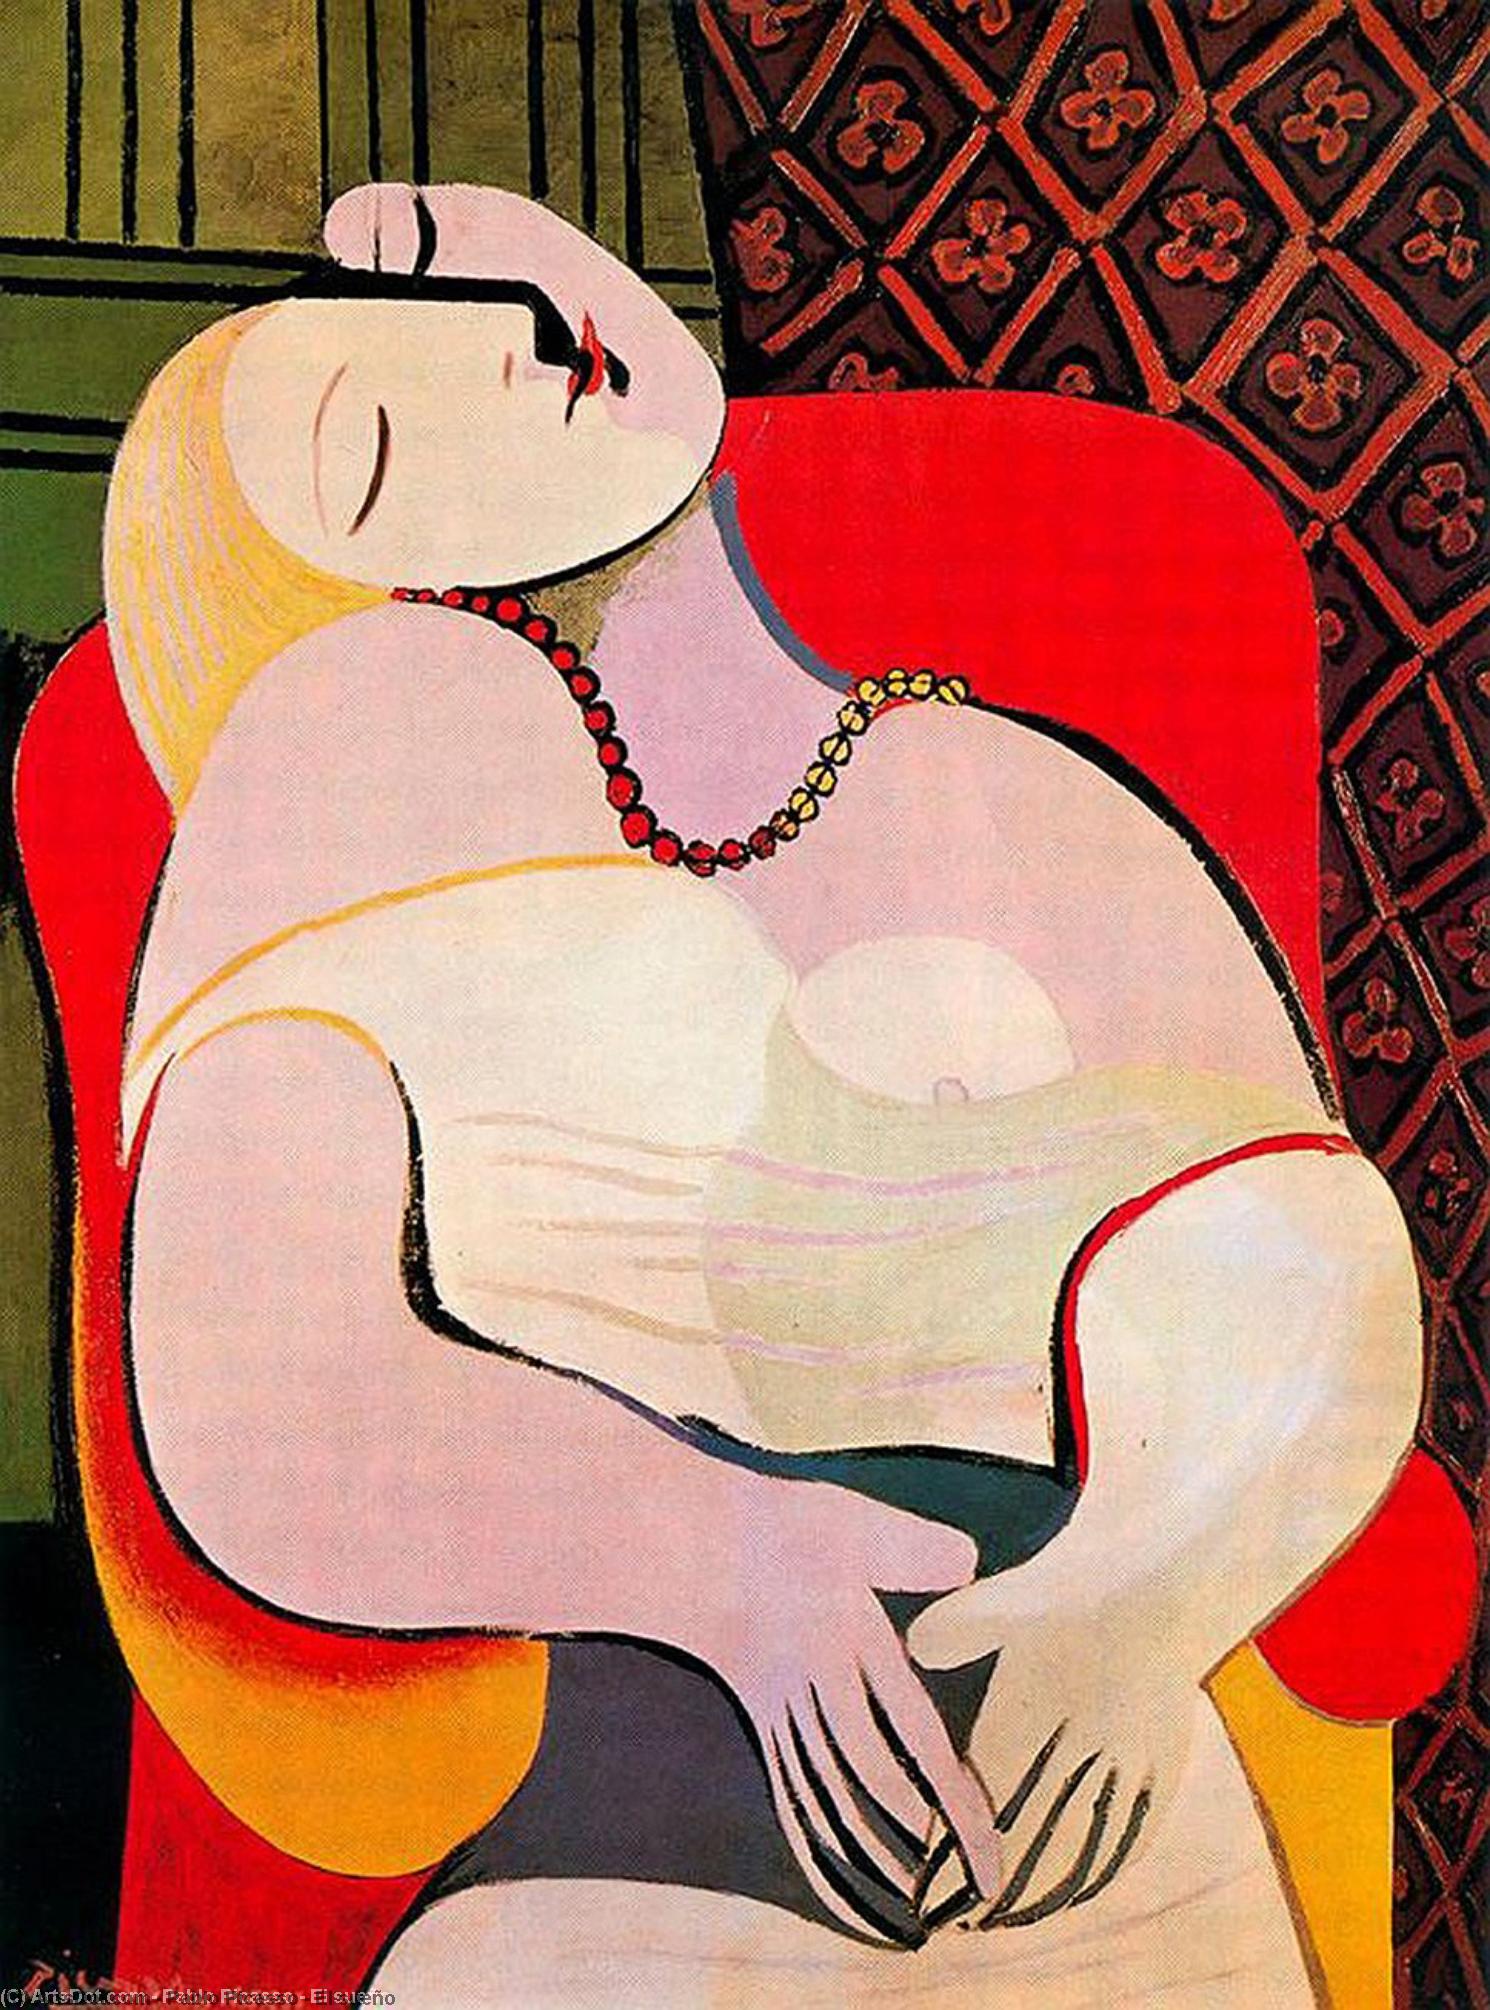 WikiOO.org - Encyclopedia of Fine Arts - Malba, Artwork Pablo Picasso - El sueño